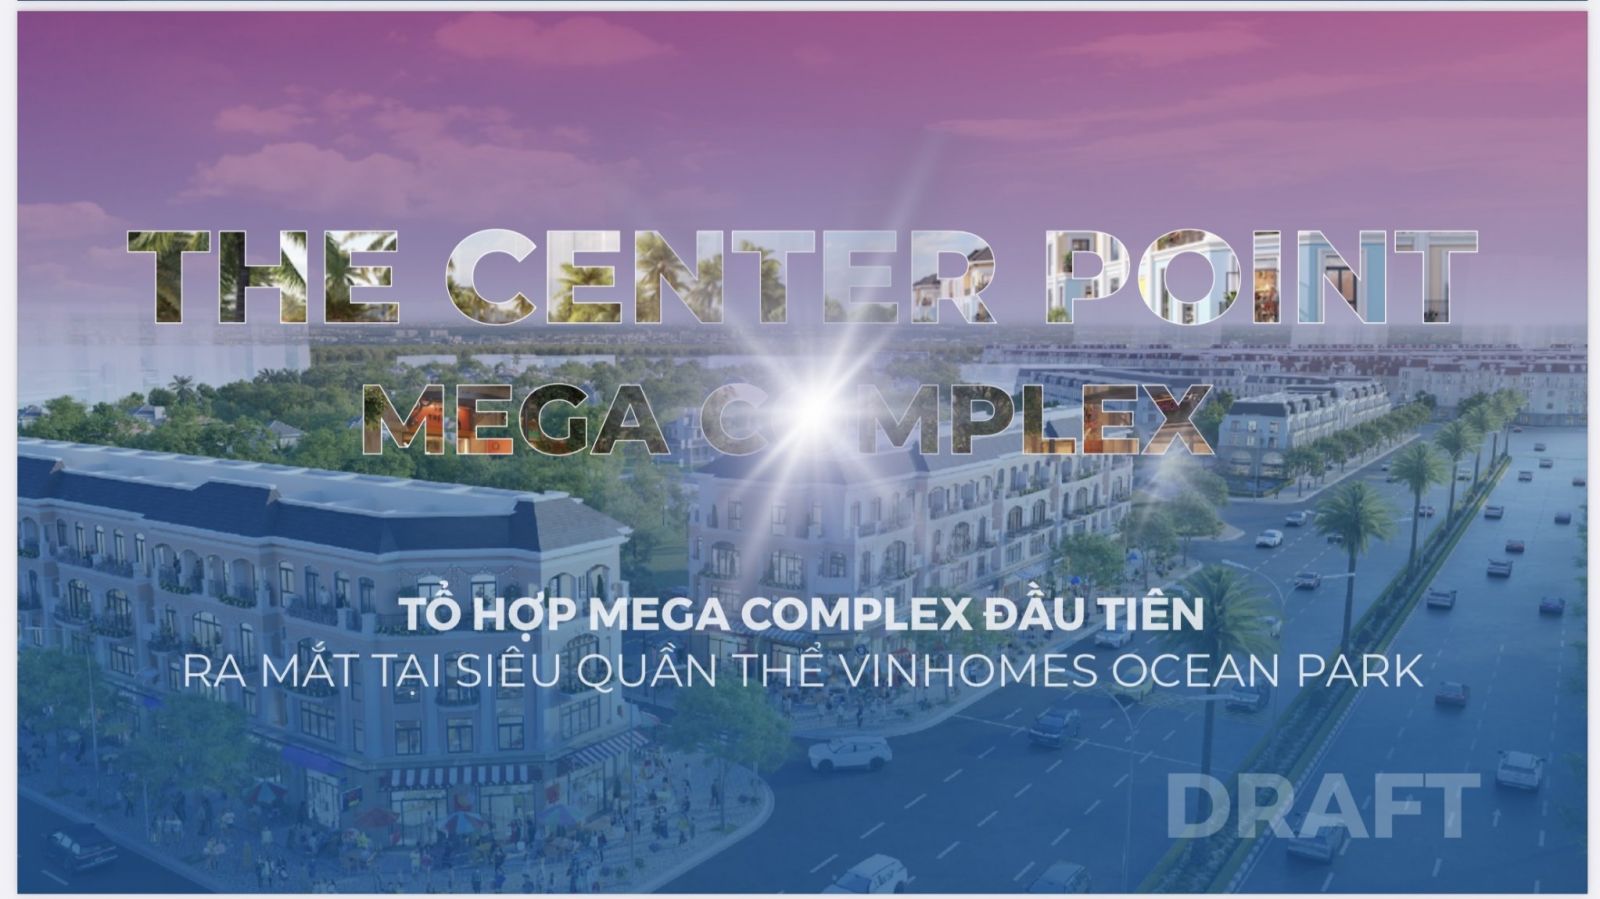 Mega complex vinhomes ocean park